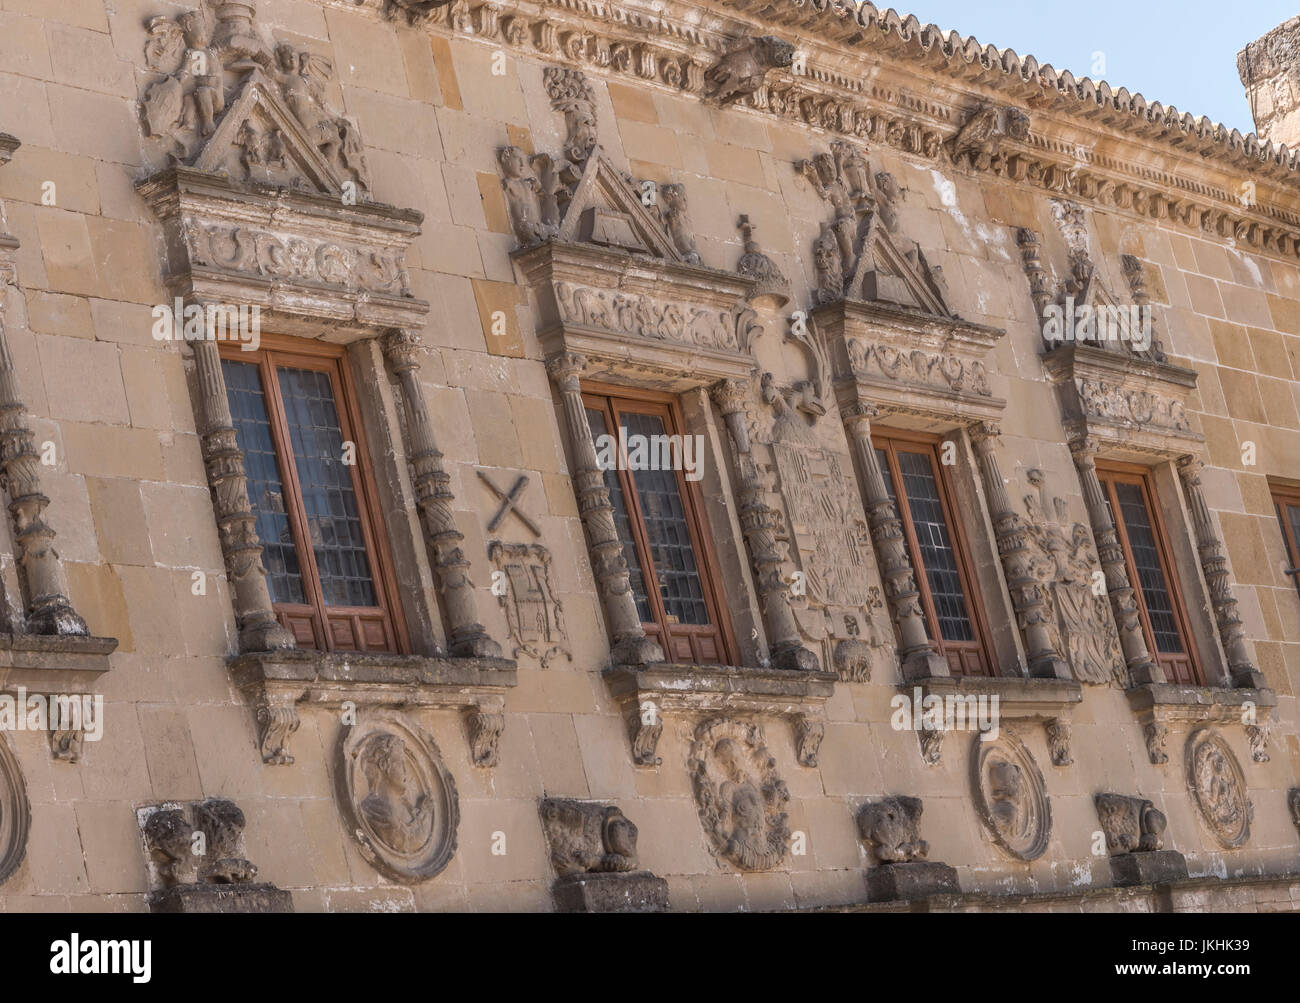 Audience publique et civile ancienne cléricature maintenant appelé maison de l'populo, placés le long de la porte de Baeza Jaén, Andalousie, Espagne Banque D'Images